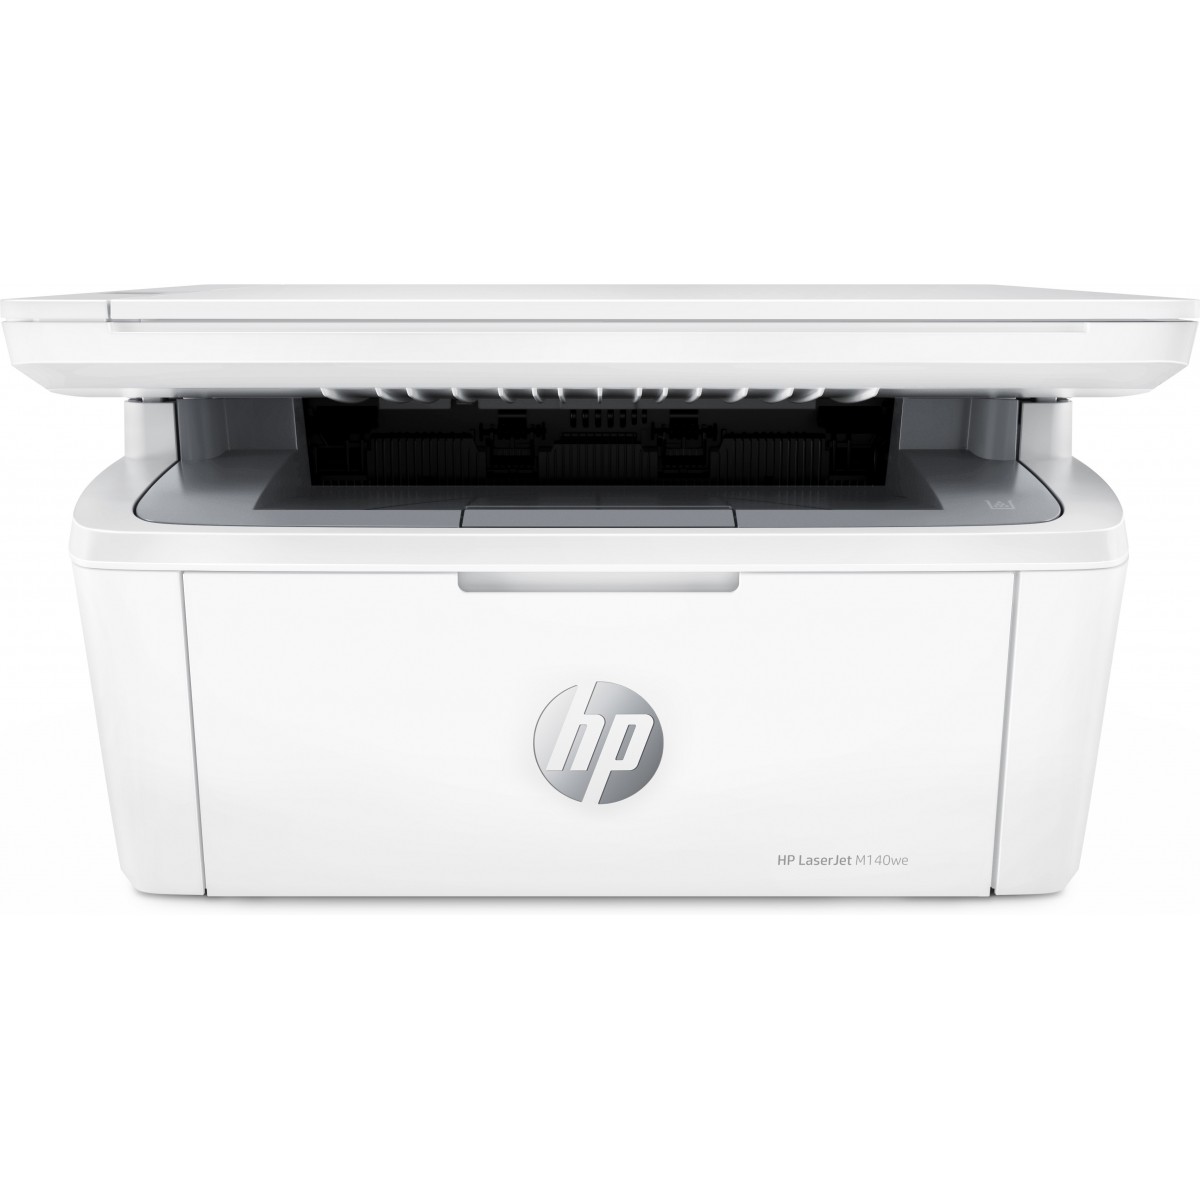 HP LaserJet MFP M140we Print Scan Copy 20ppm Printer